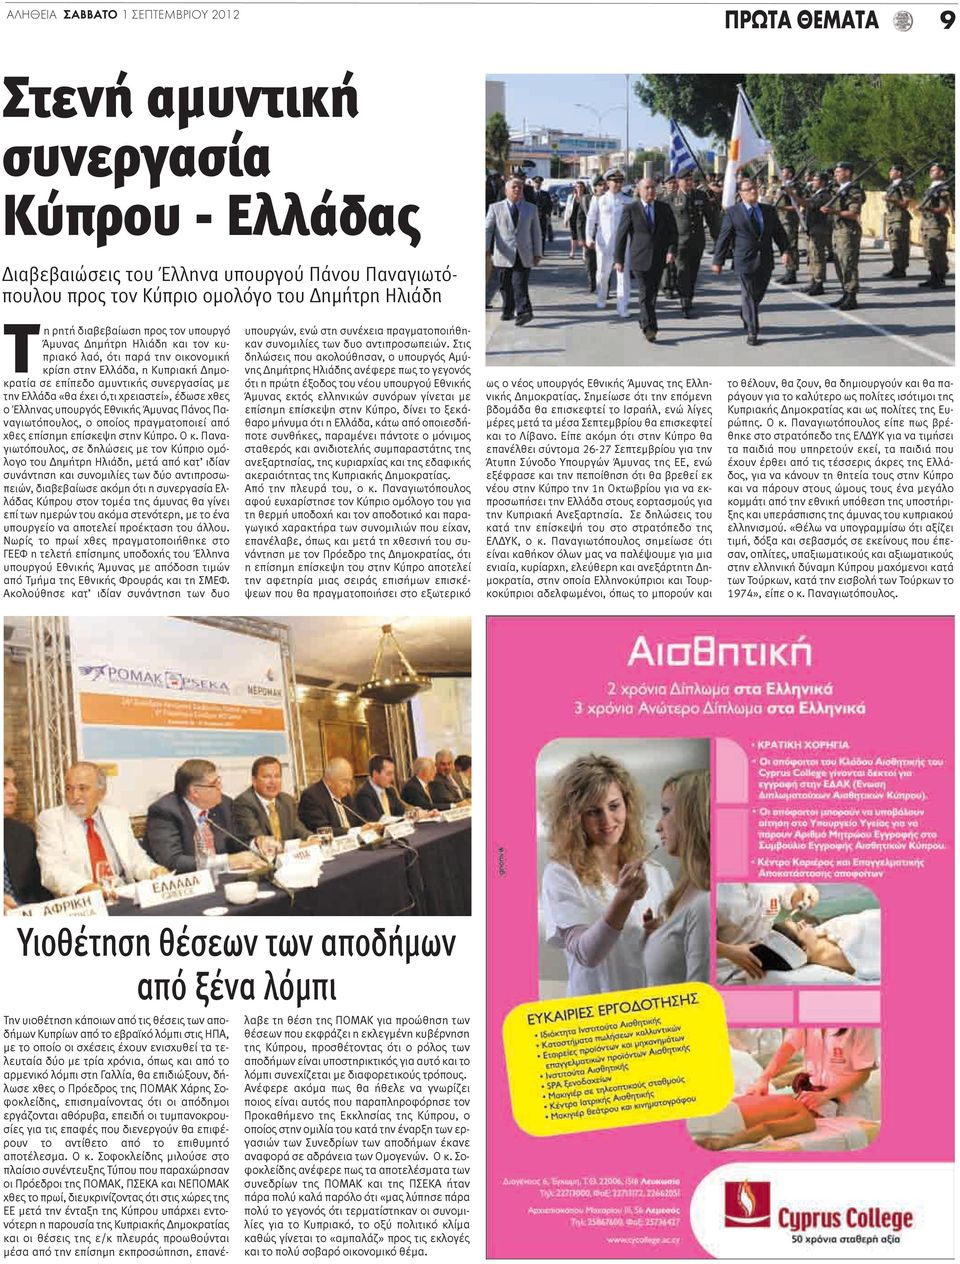 χρειαστεί», έδωσε χθες ο Έλληνας υπουργός Εθνικής Άμυνας Πάνος Παναγιωτόπουλος, ο οποίος πραγματοποιεί από χθες επίσημη επίσκεψη στην Κύπρο. Ο κ.